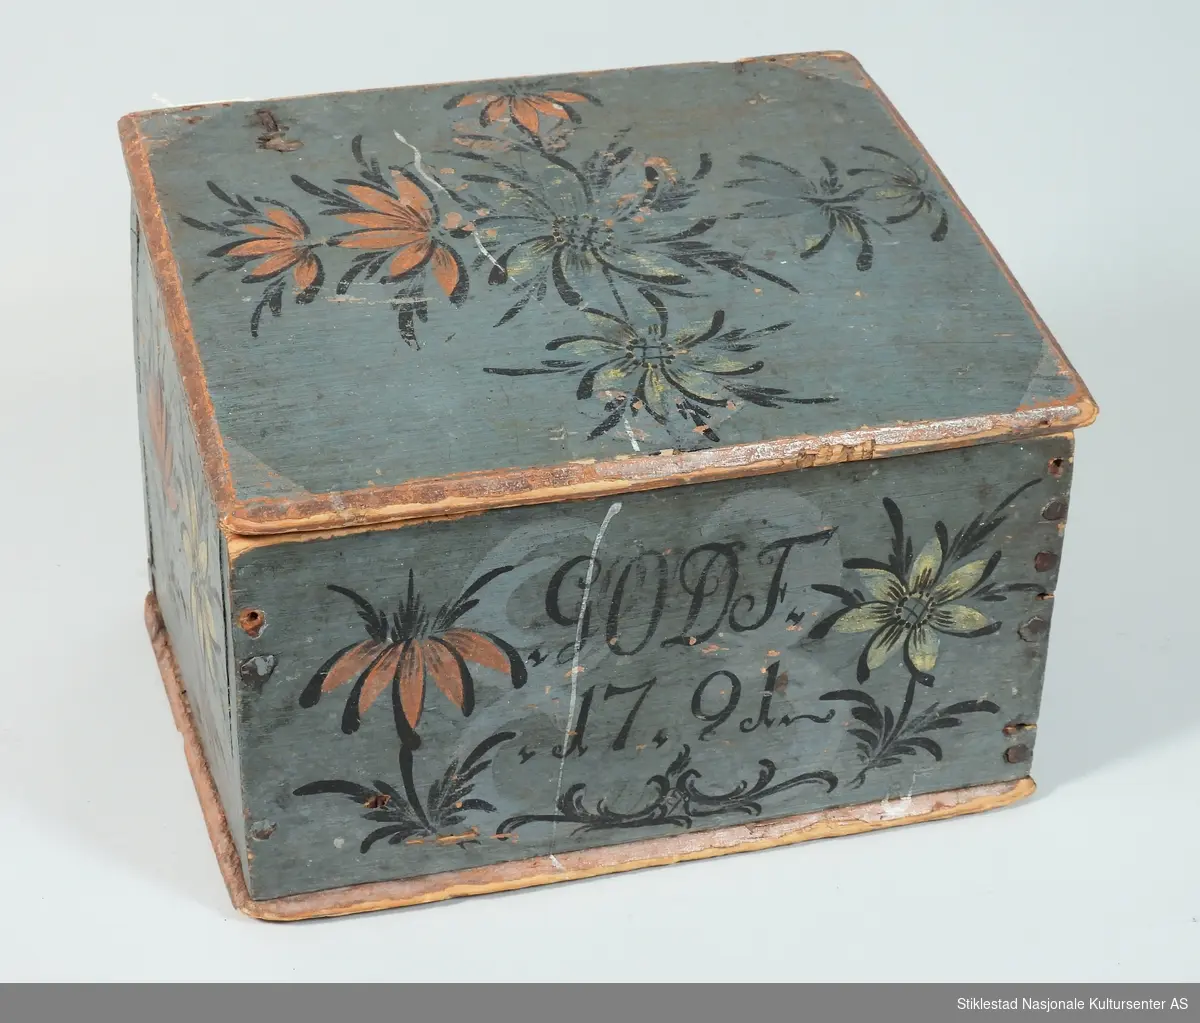 Blåmalt lite skrin med skrått lokk. Rosemalt på tre sider, samt lokk. Teksten og konturen av blomster er svartmalt. Blomster i rød og gulhvit farge. Rødmalte kanter på skrin. Lokket er malt hvitt på innsiden, der er det malt en stilisert blomst i orange farge. Naglet sammen med jernspiker. Hengslet lokk. Malt av Ole Haldosen Berg (1747-1828)